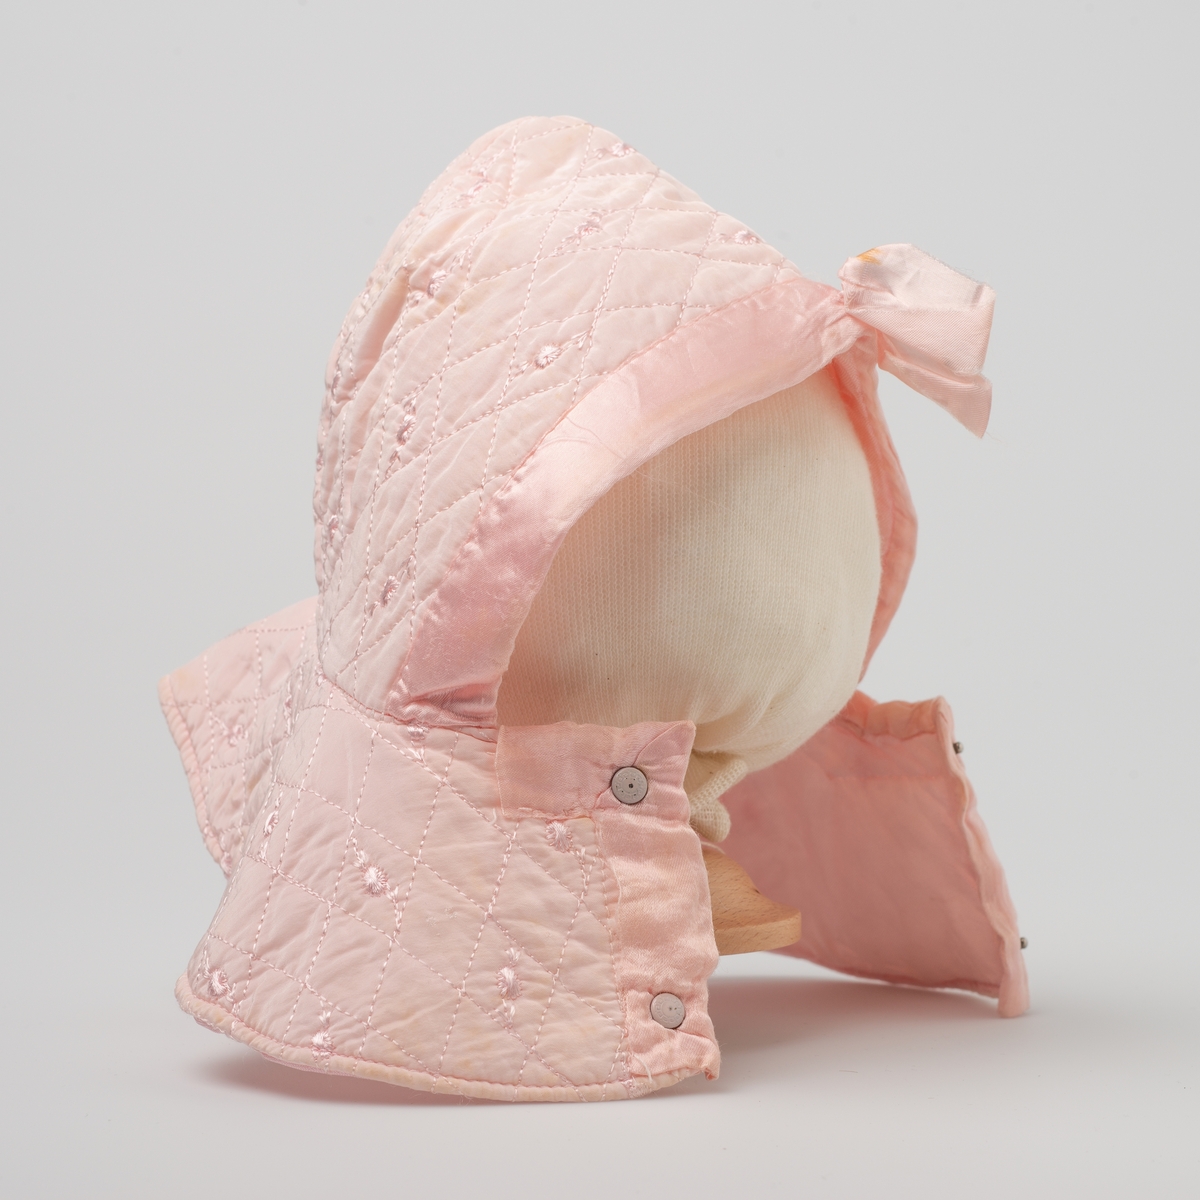 Babypose med kyse i vattert stoff
Baby- og barnetøy som først var brukt av tre søstre i USA på 1930- og 40-tallet, før det ble sendt til Norge og brukt av tre søstre i Eidsberg på 1940- og 50-tallet - kusiner av de tre i USA.